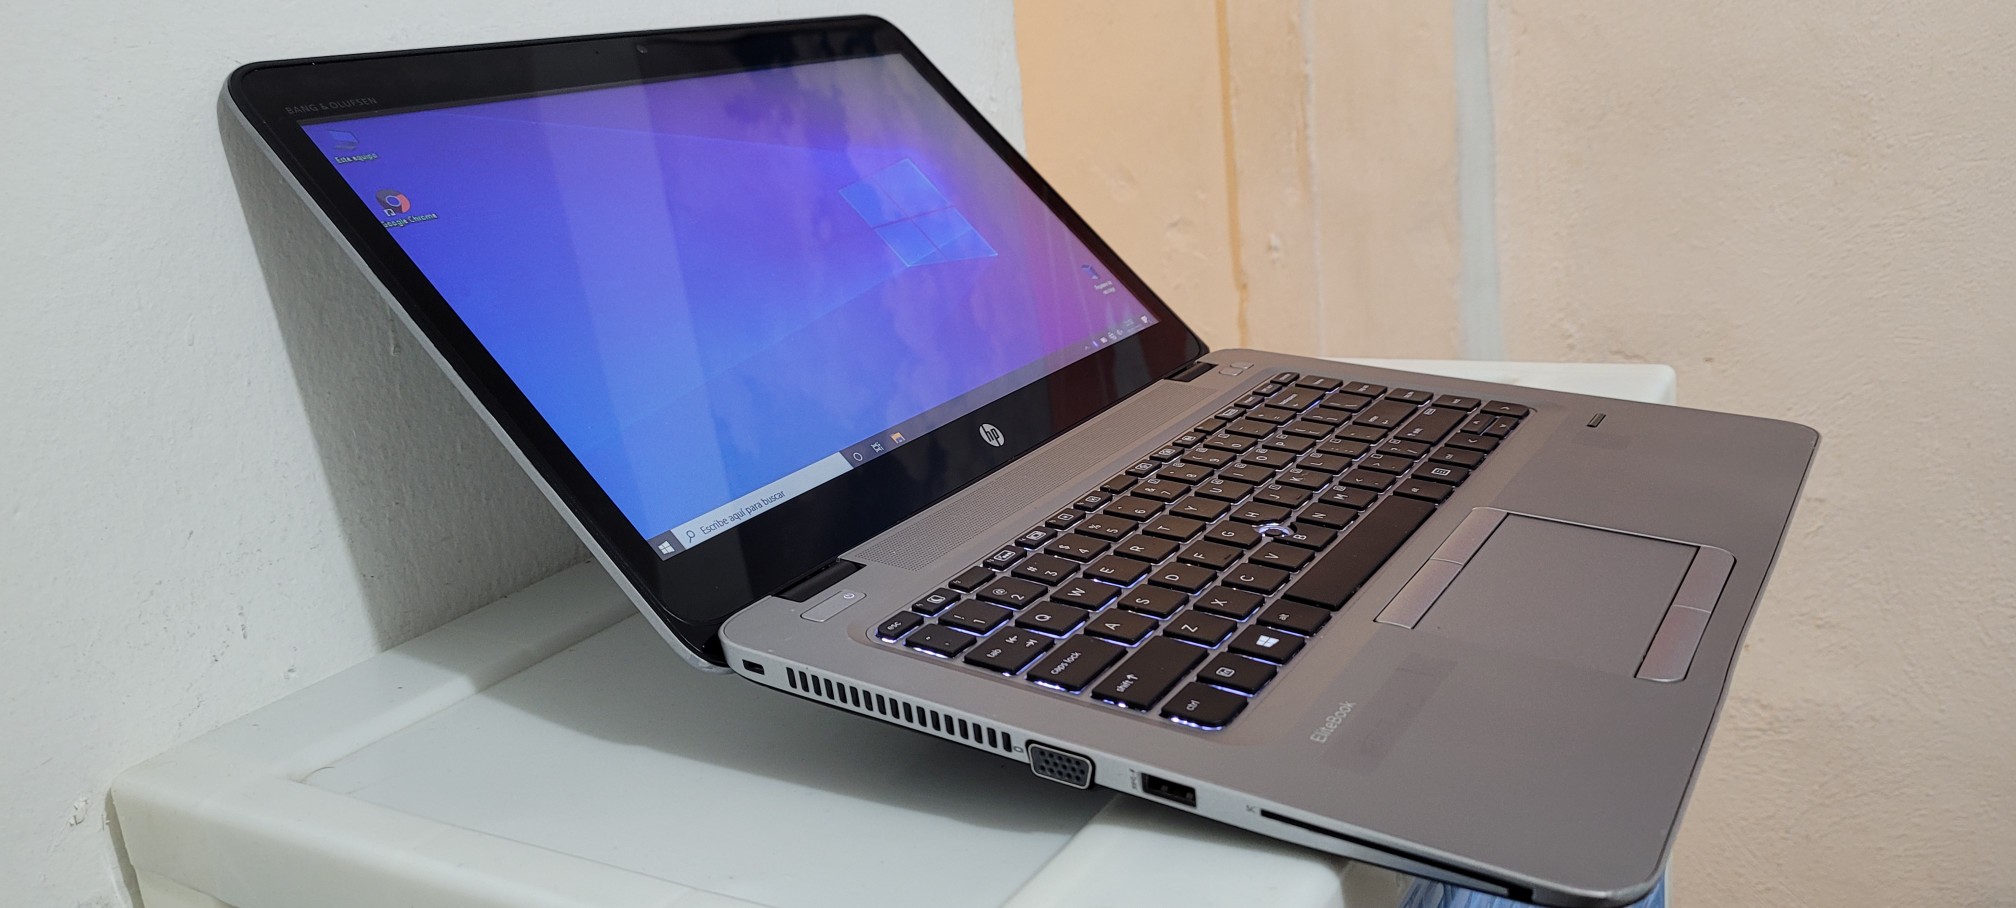 computadoras y laptops - Laptop hp G3 14 Pulg Core i5 7ma Gen Ram 8gb ddr4 Disco 128gb Y 320gb full 1